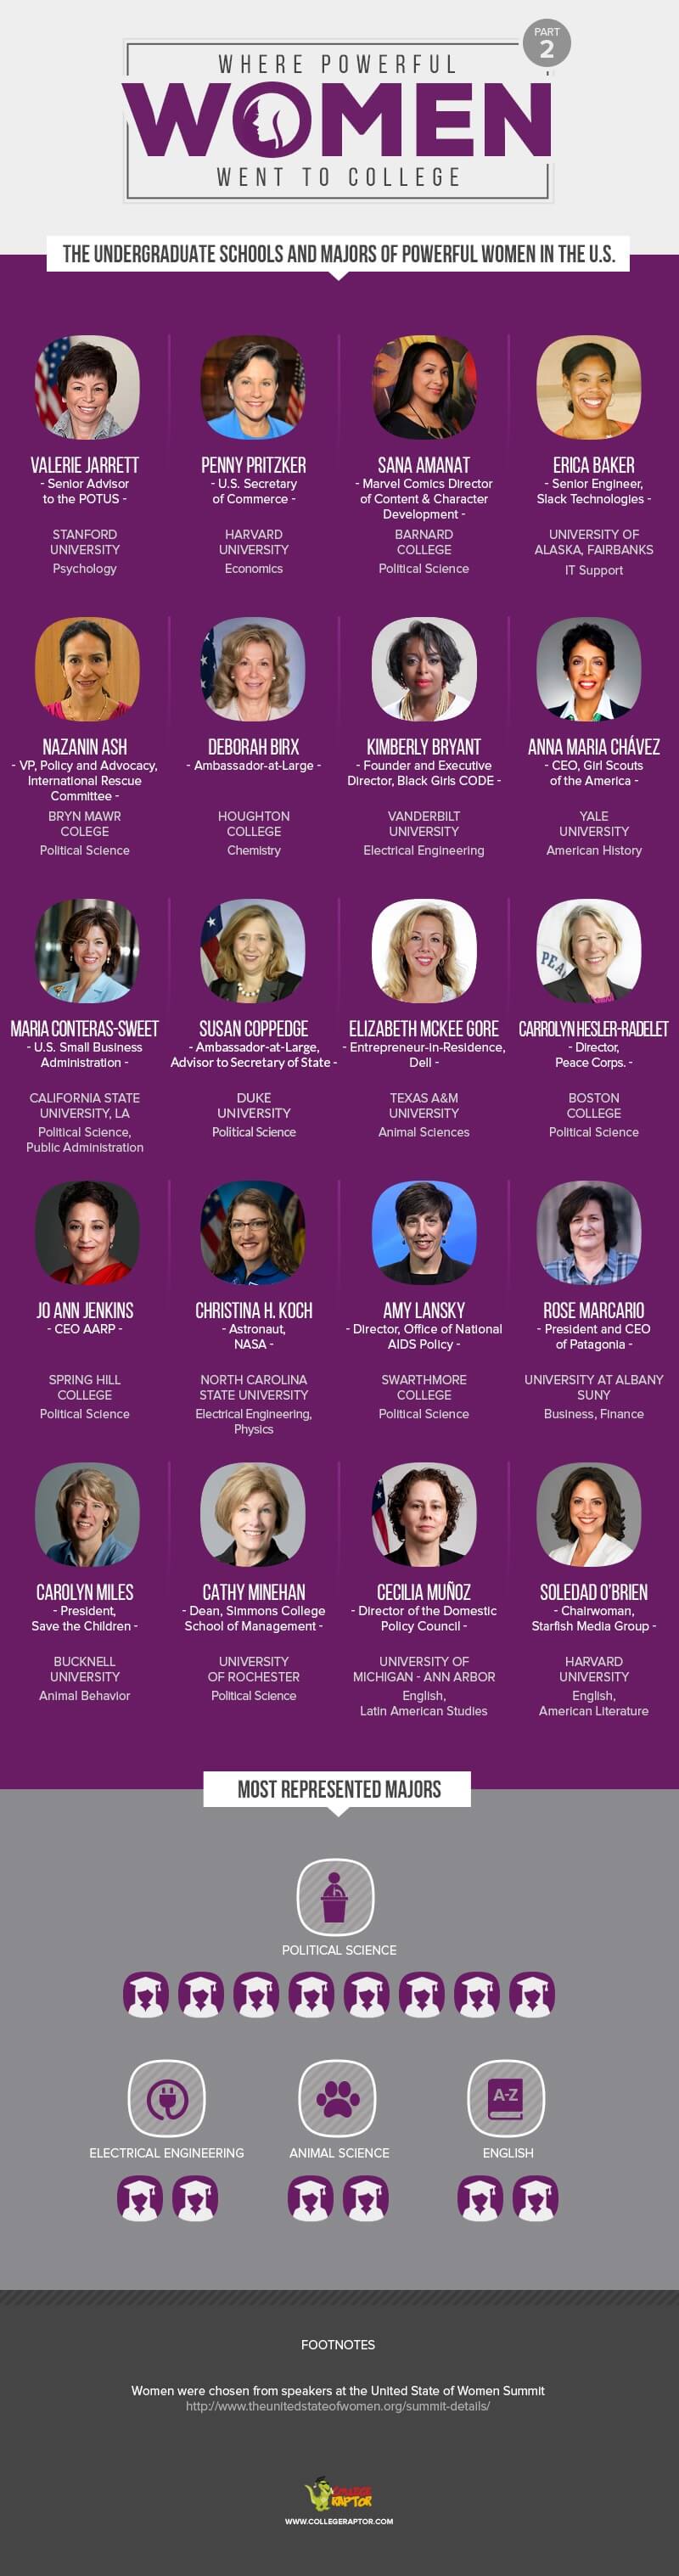 more women in power